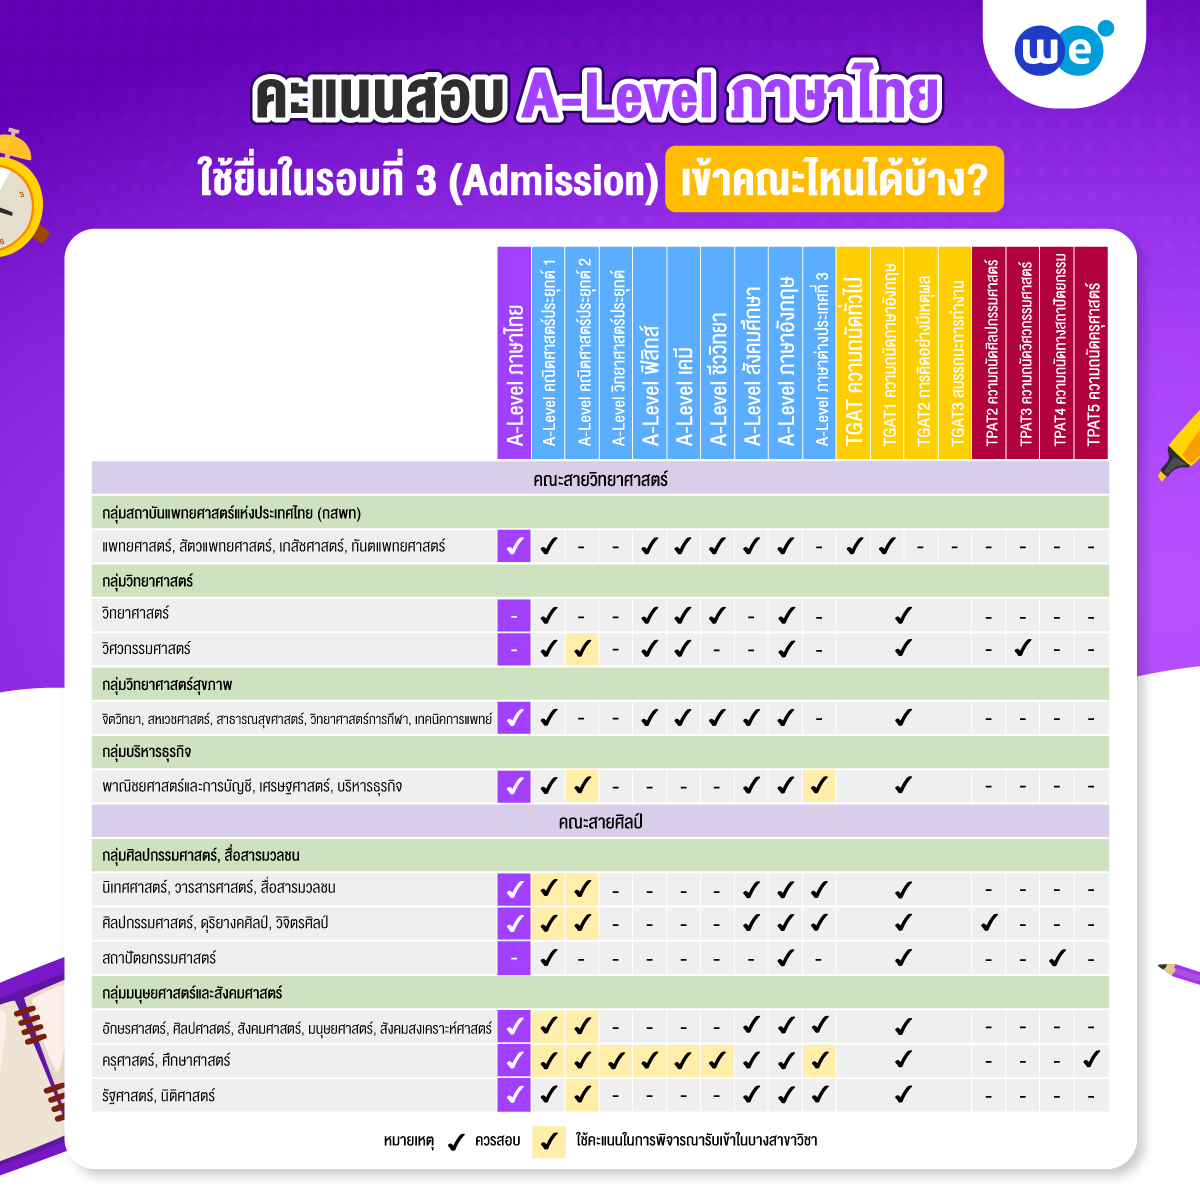 คณะที่ใช้คะแนน A-Level ภาษาไทย ยื่นในระบบ TCAS รอบที่ 3 (Admission)